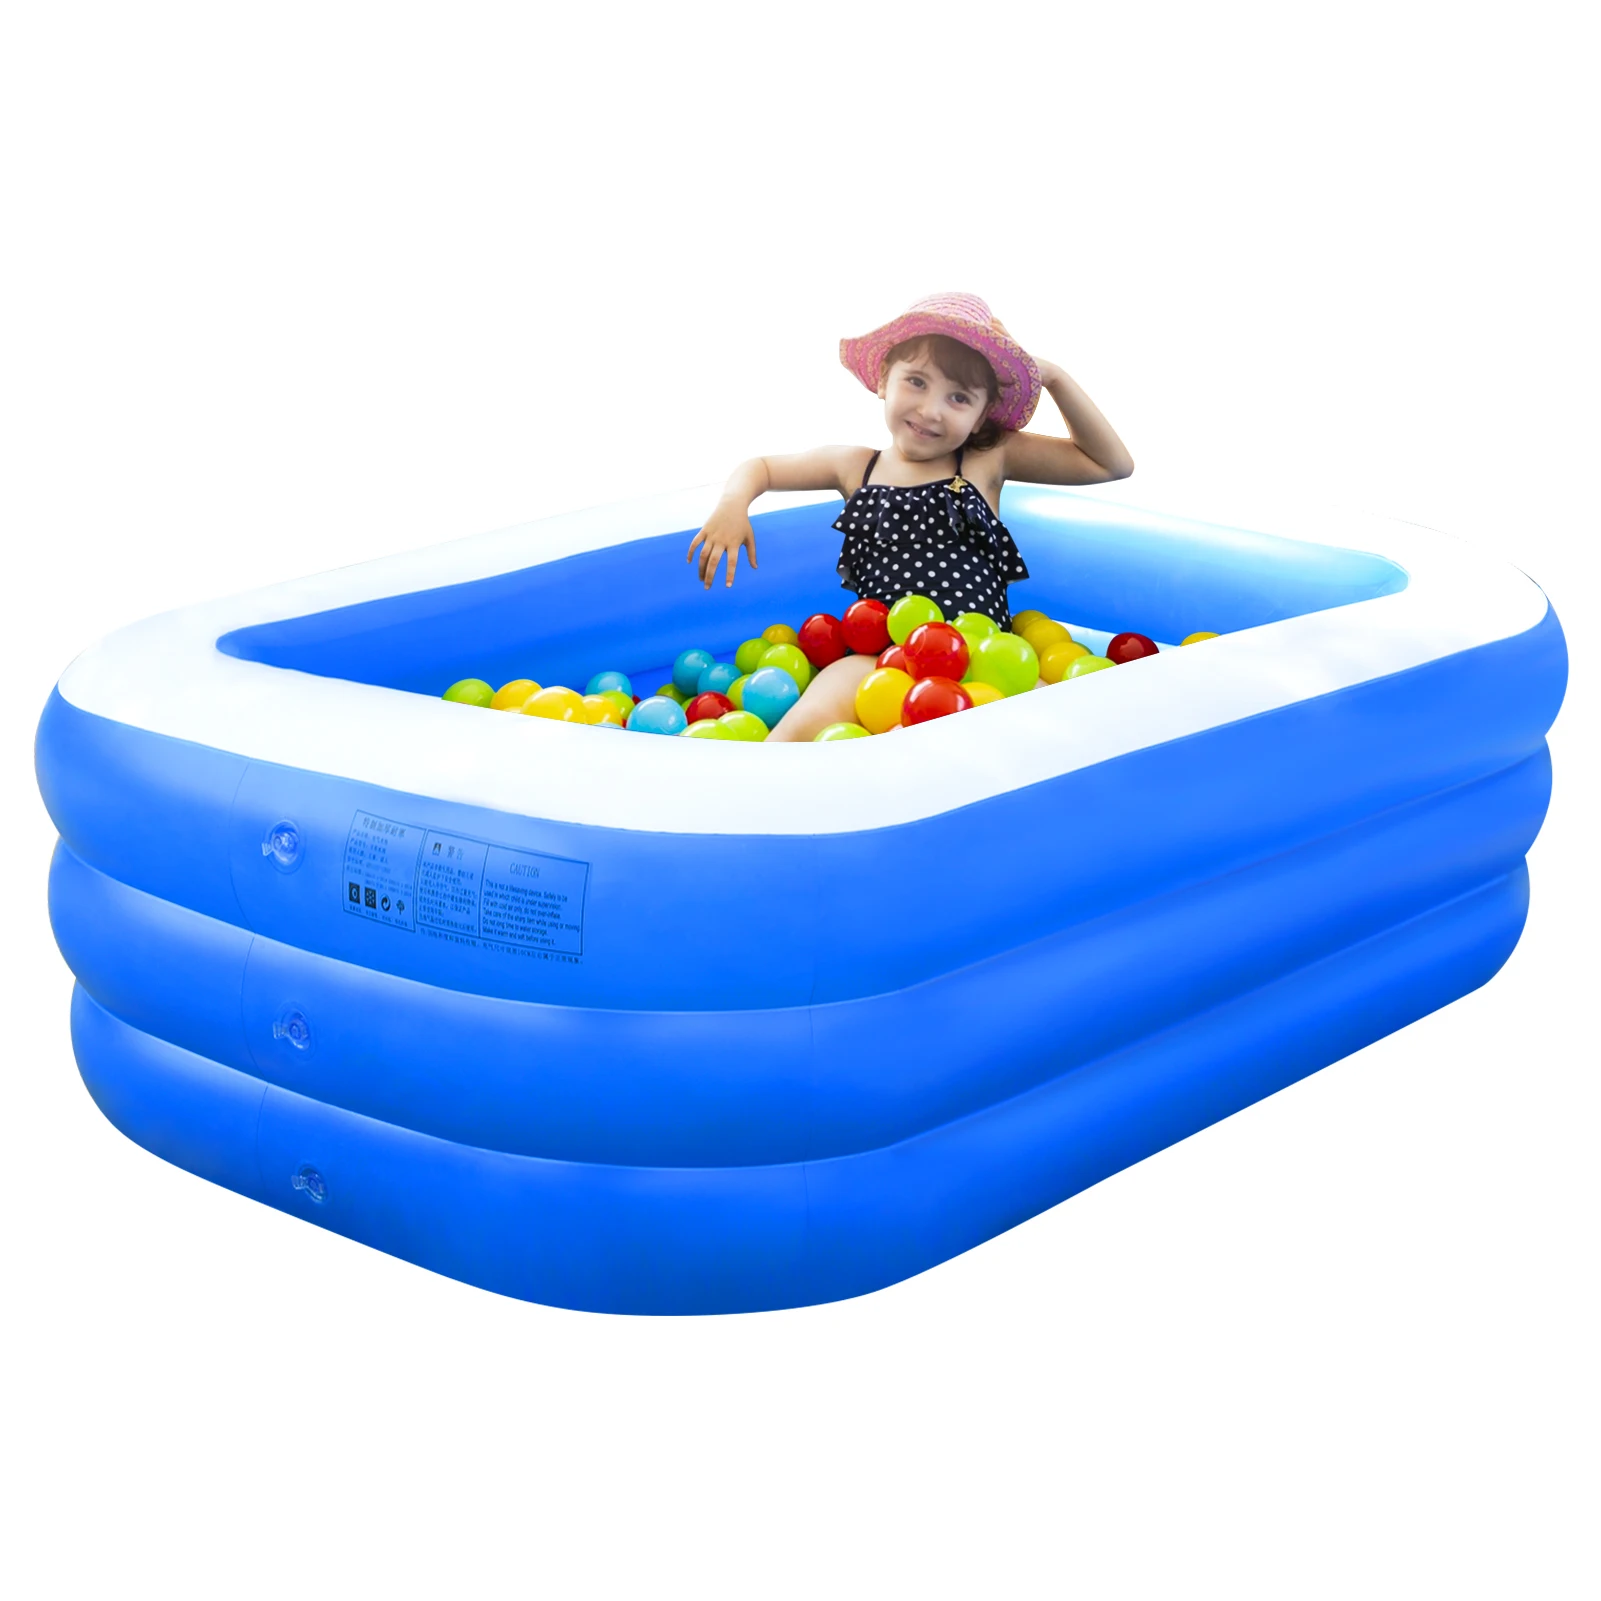 

Детский надувной плавательный бассейн для купания детей на открытом воздухе для лета семейный плавательный бассейн s доставка из США